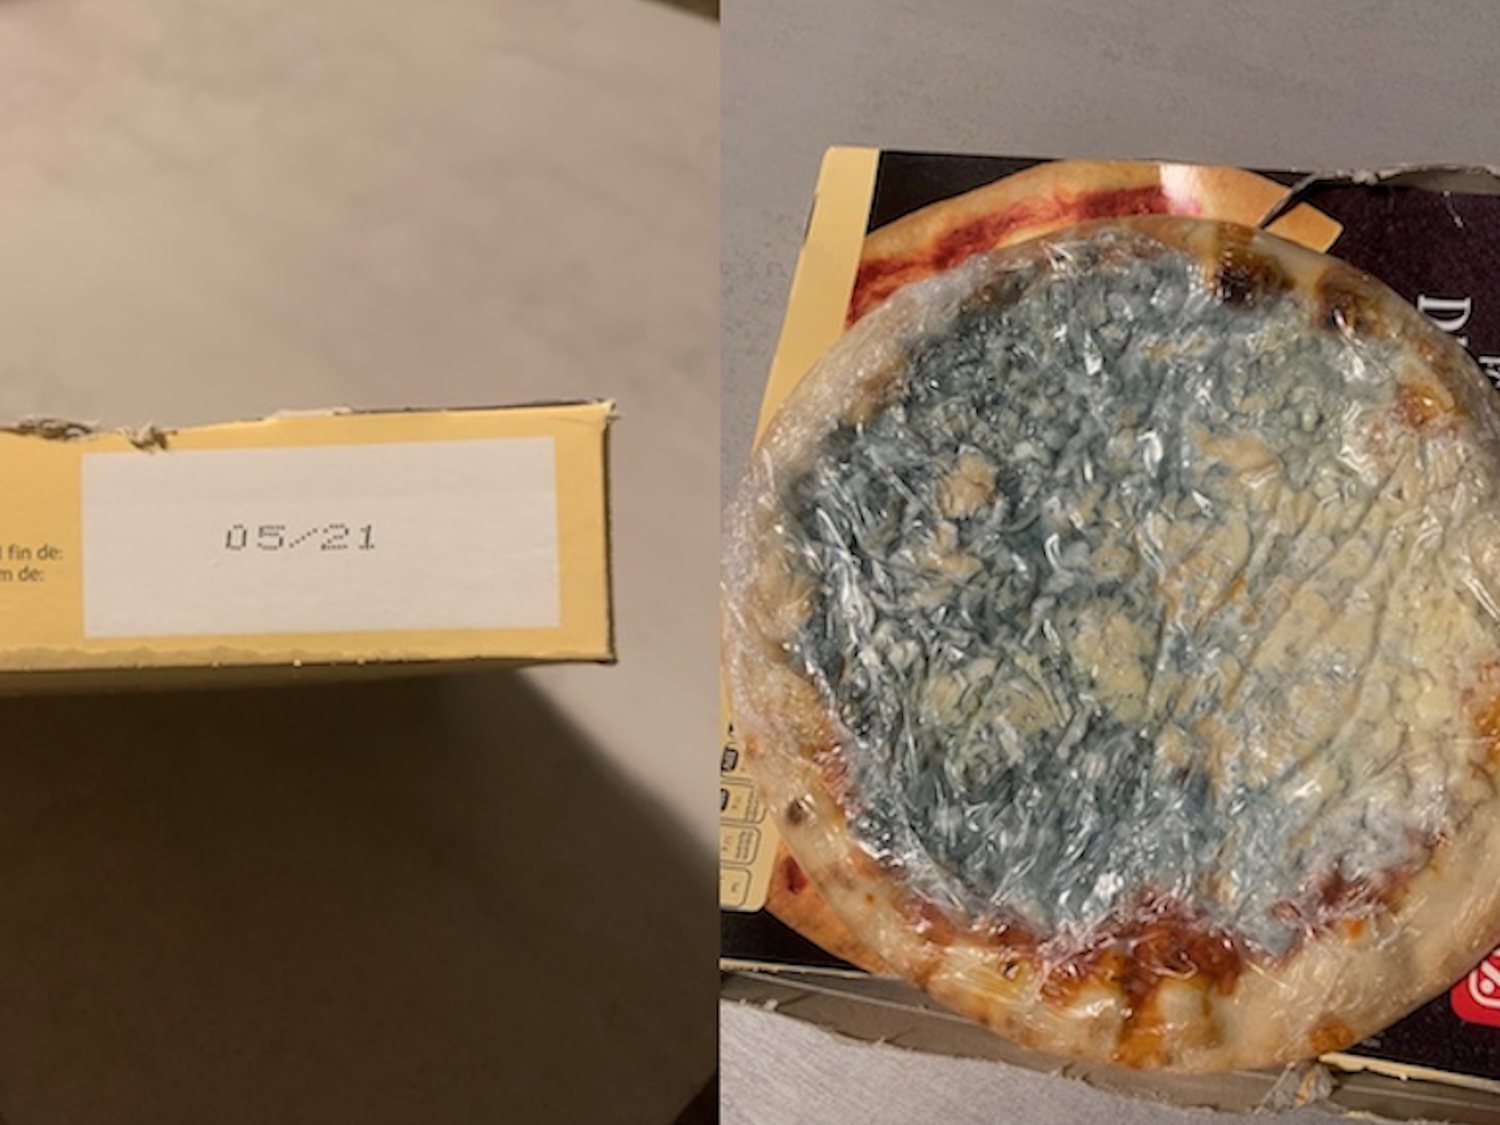 Compra una pizza de DIA con caducidad en 2021 y aparece llena de hongos